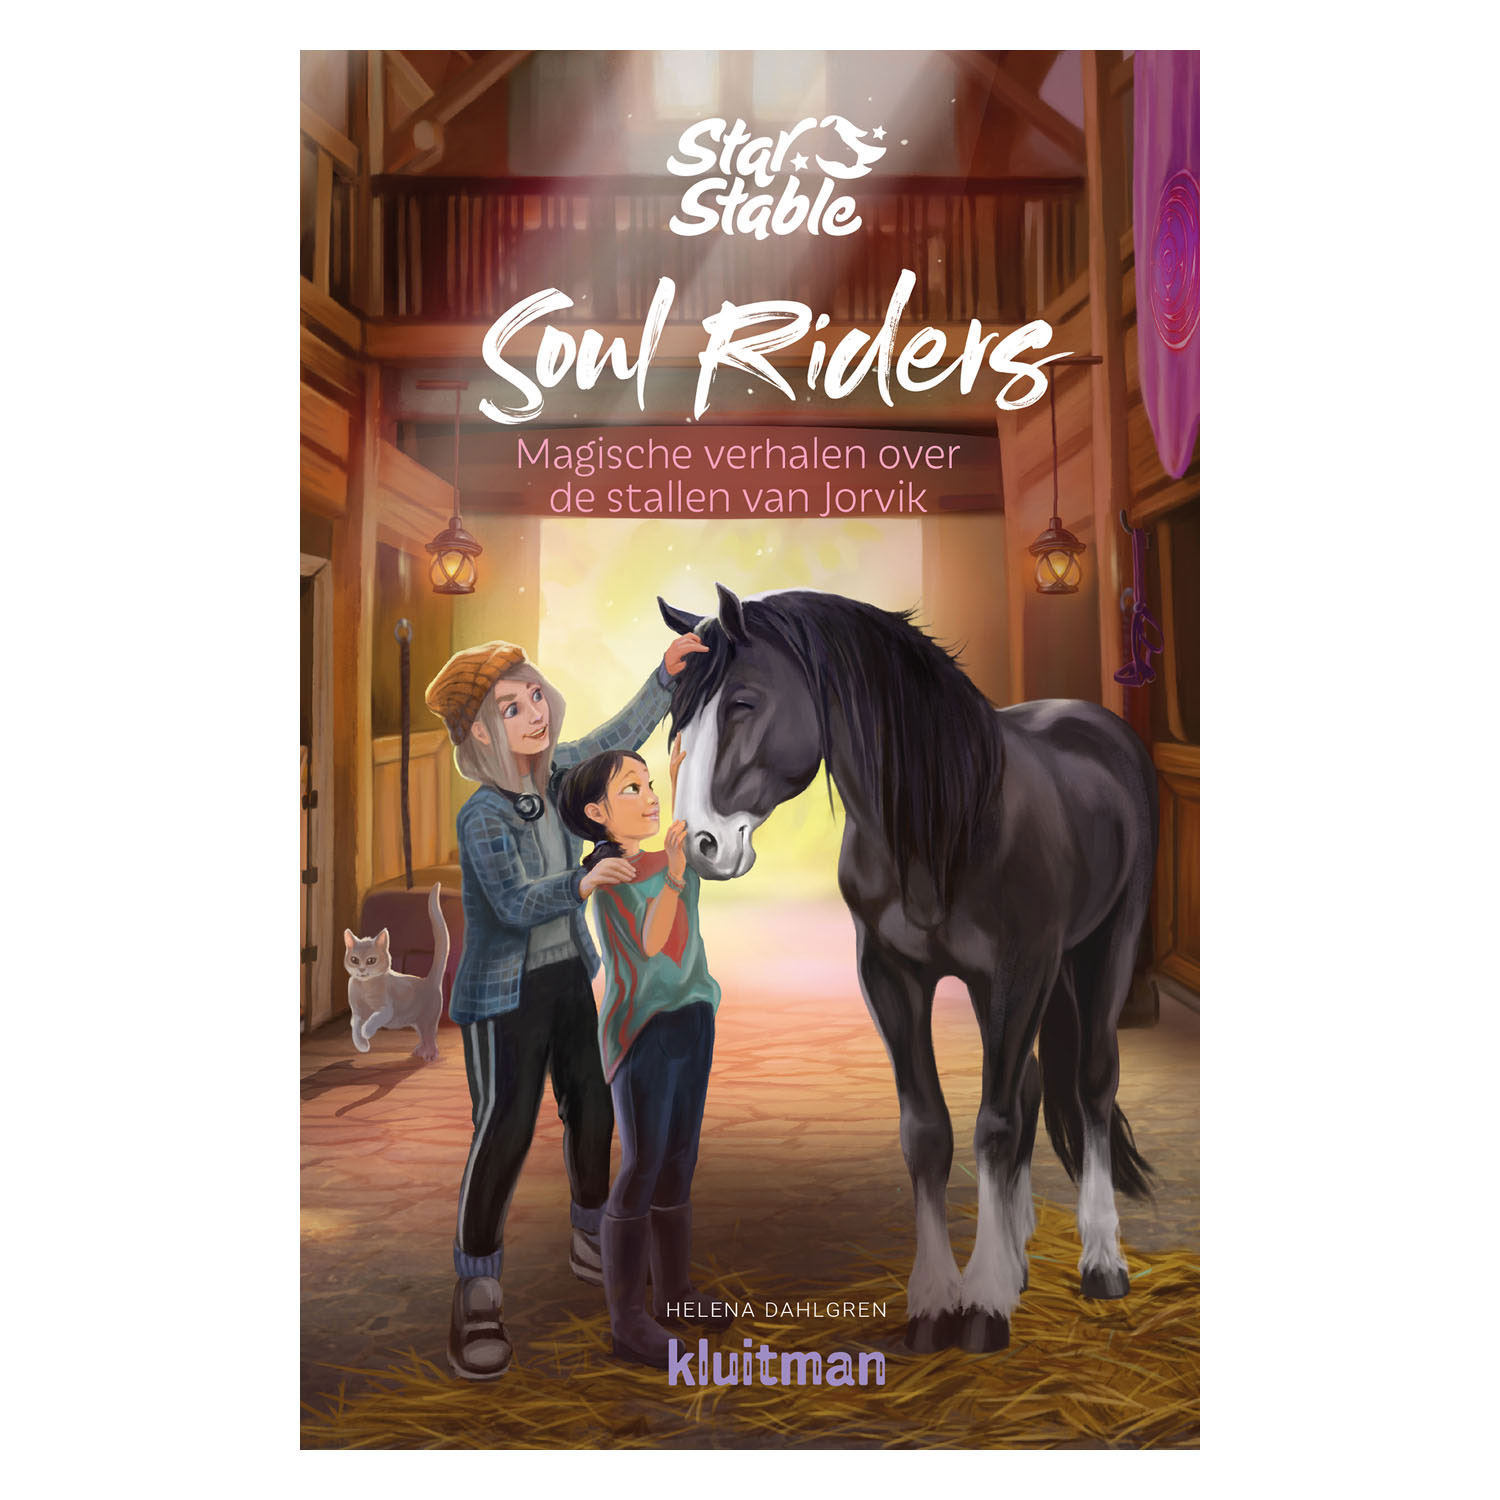 Soul Riders: Magische verhalen over de stallen van Jorvik